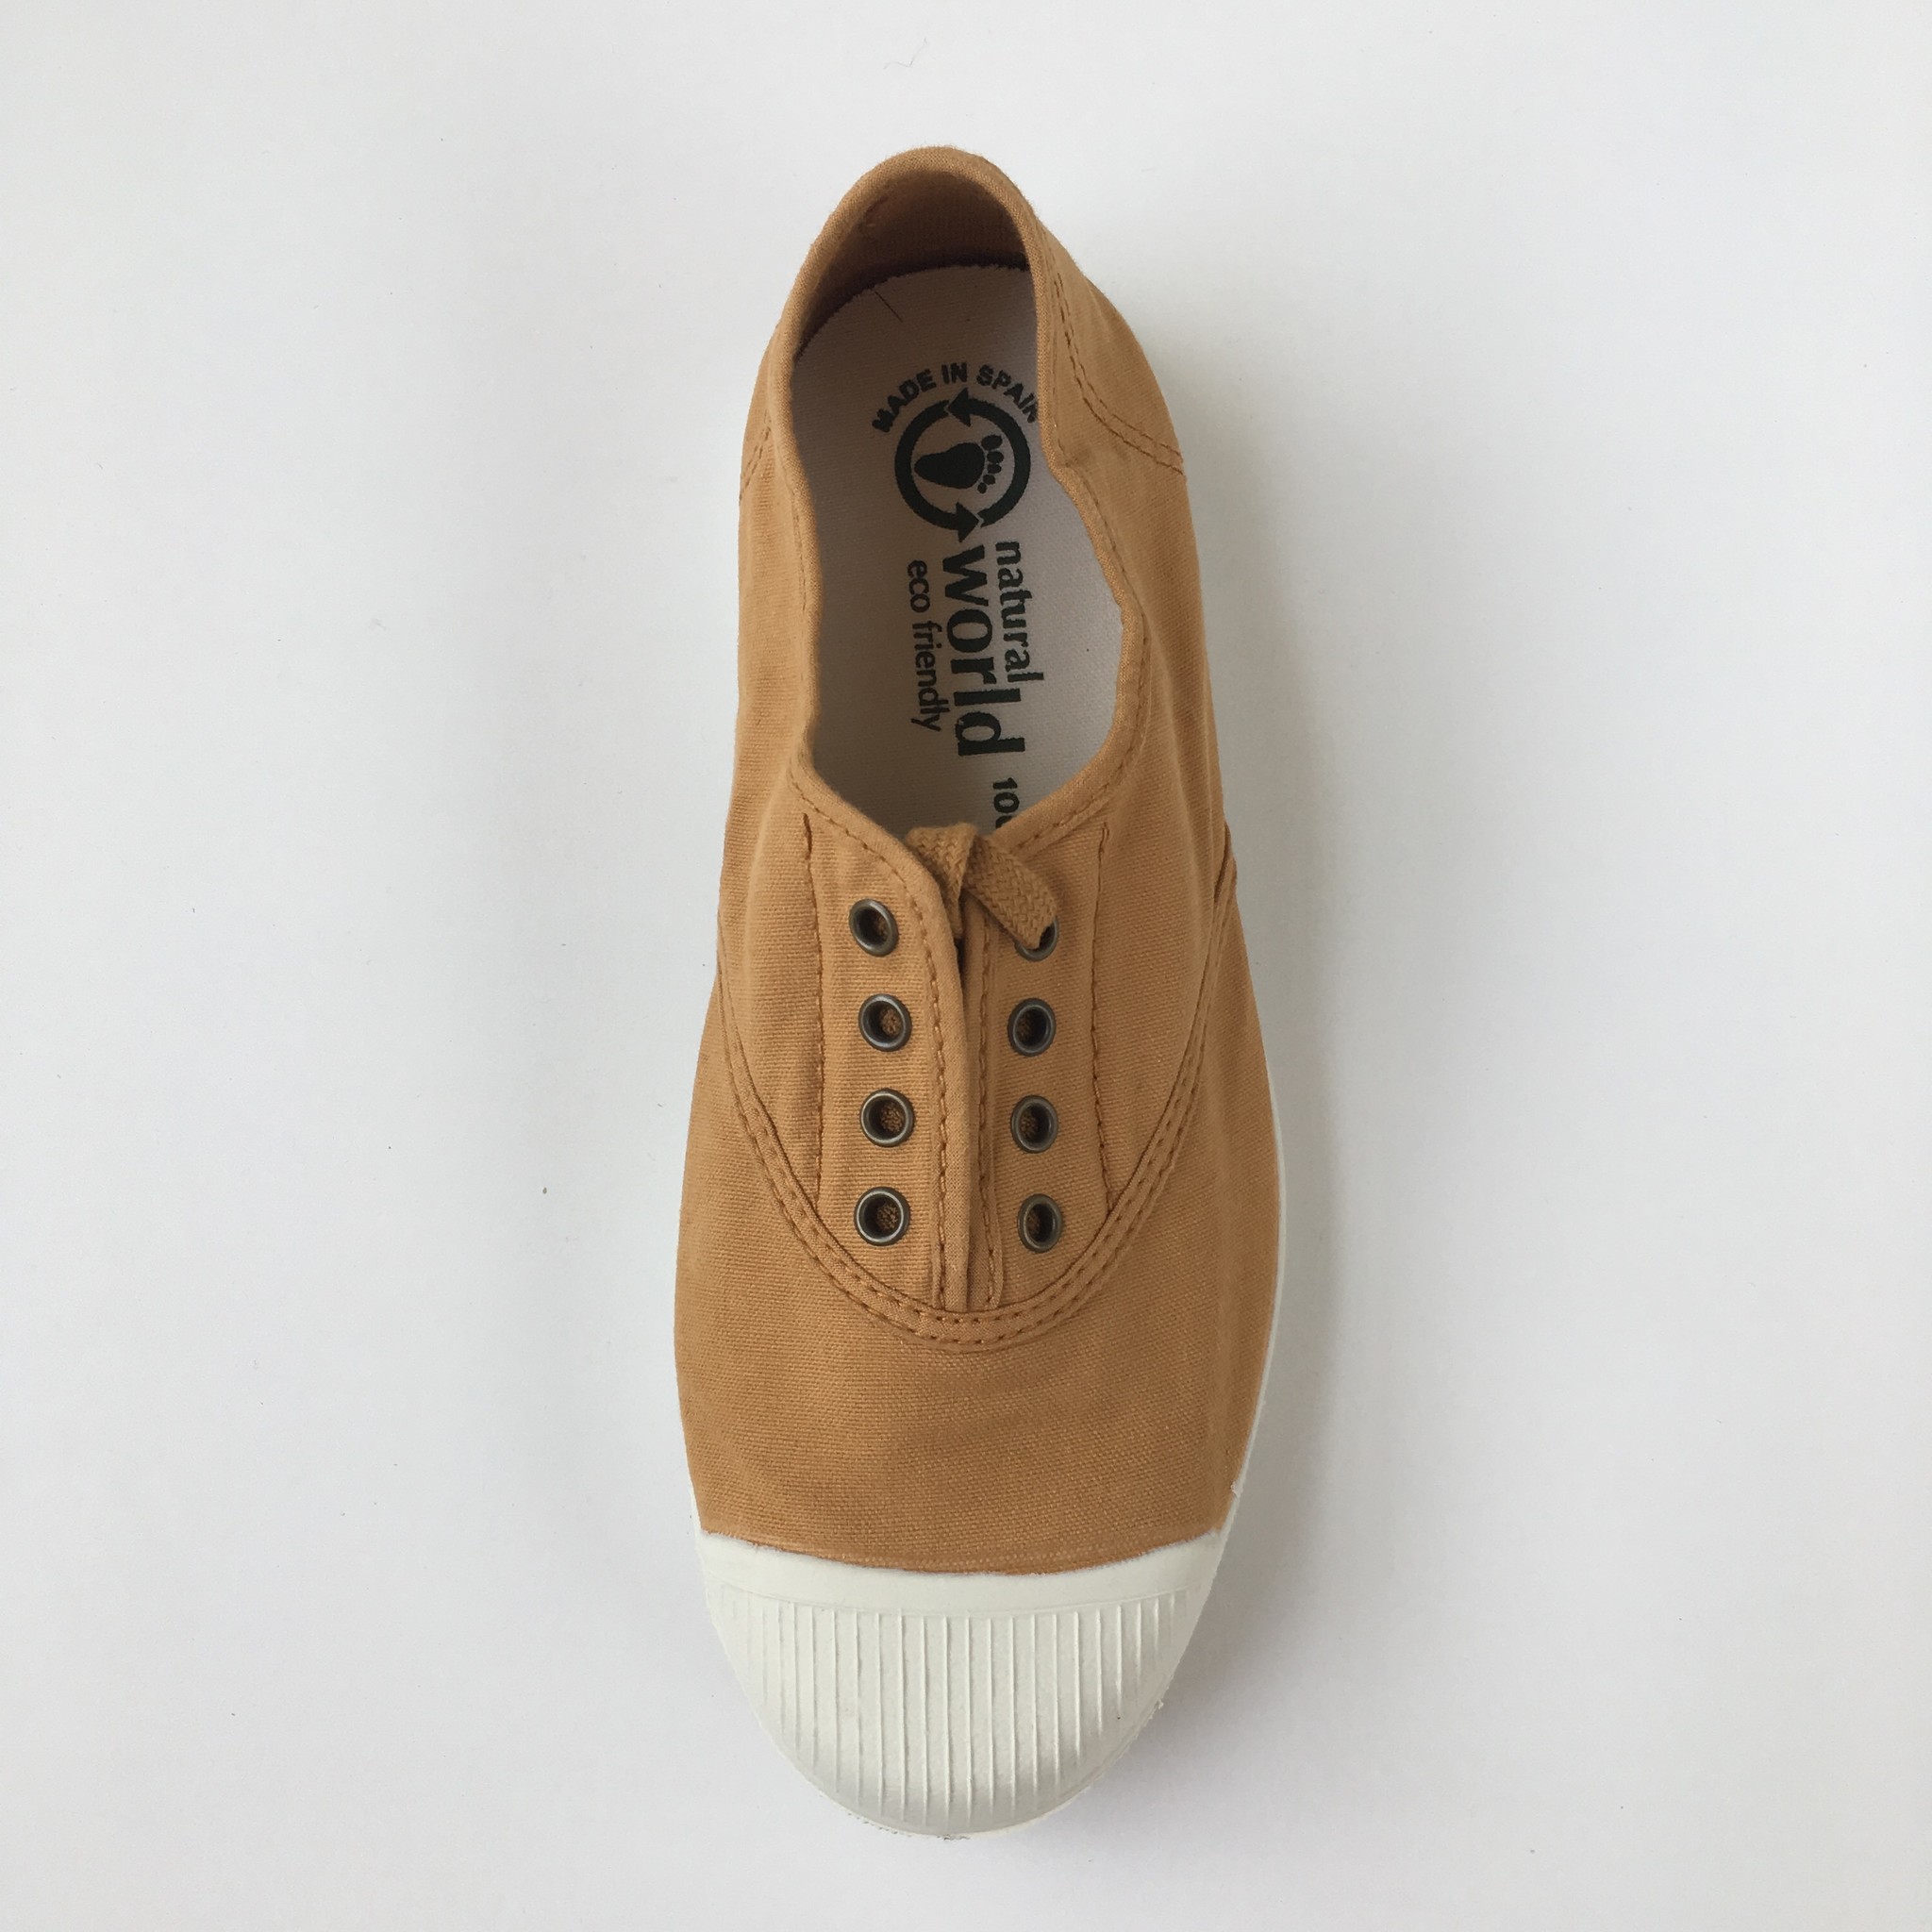 NATURAL WORLD - eco sneakers dames - 100% biologisch katoen/100% natuur rubber - mosterd geel